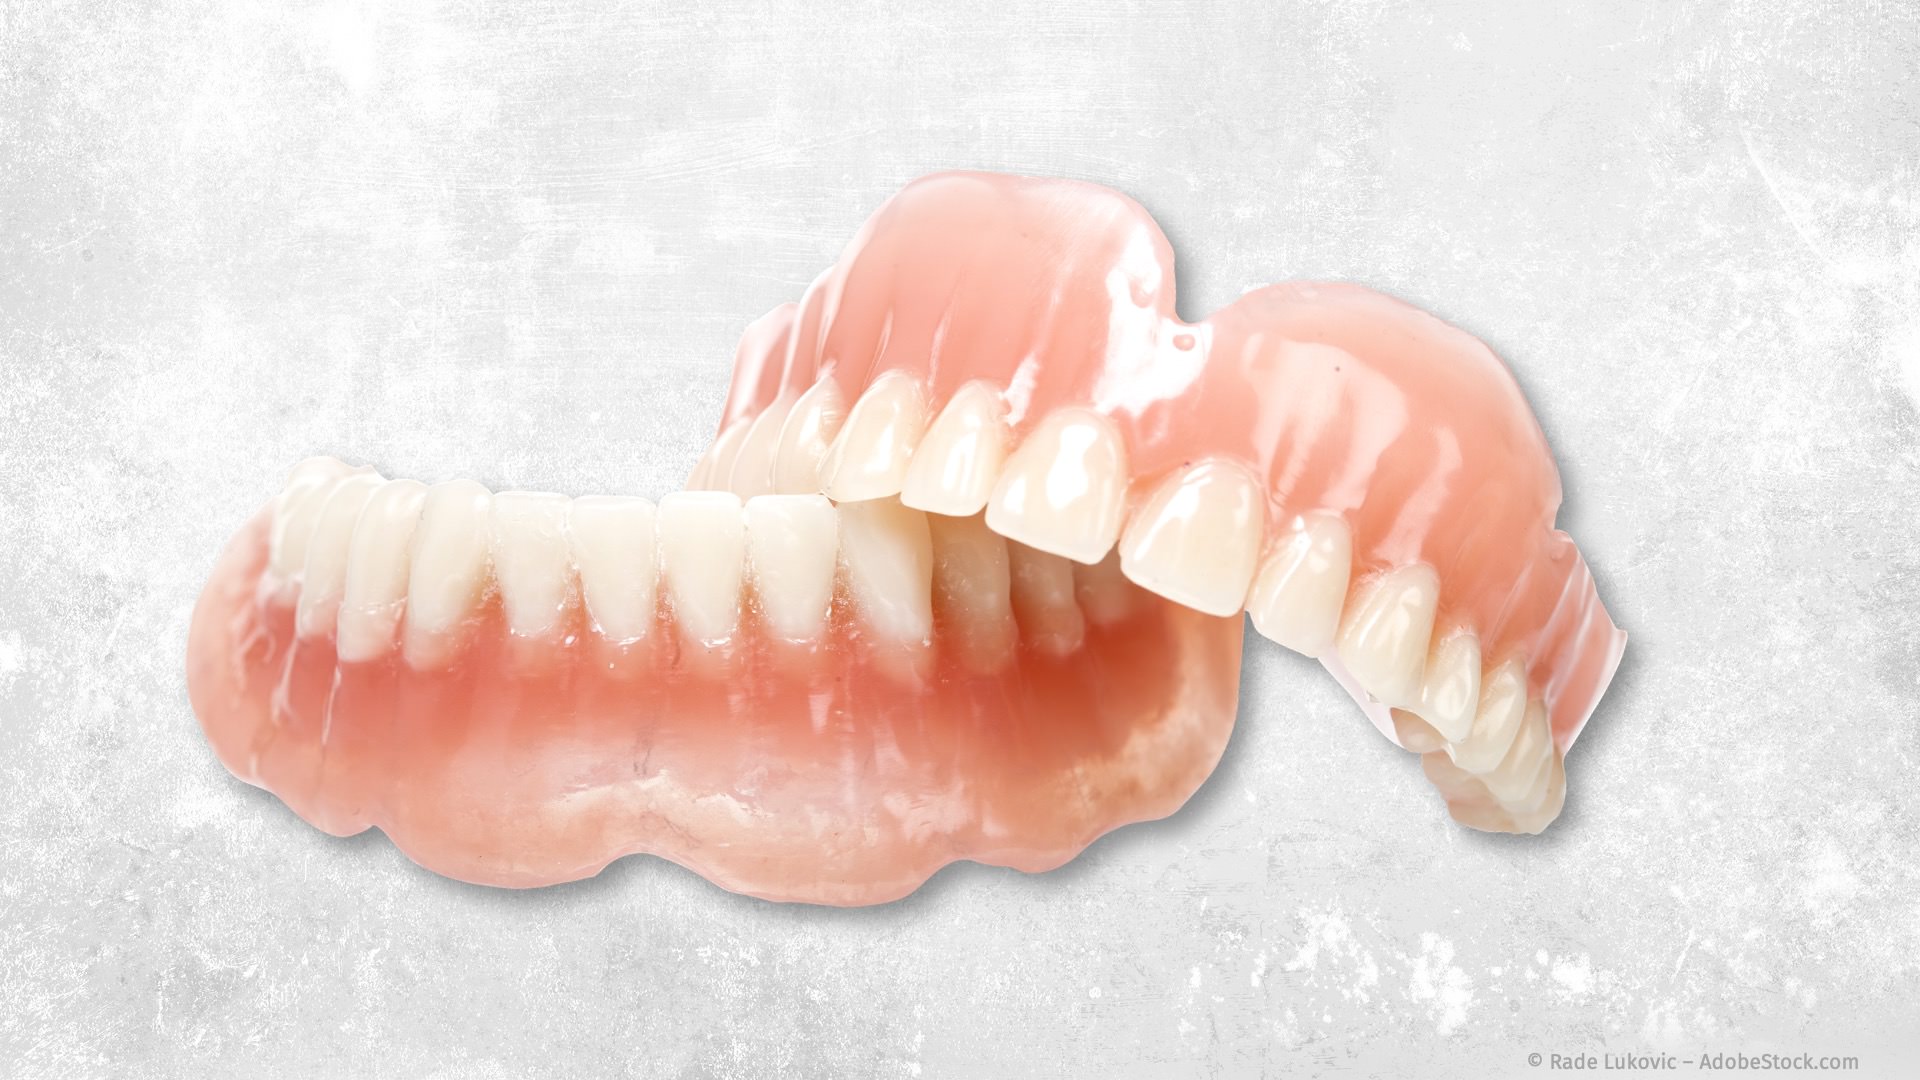 Totalprothesen, wenn alle Zähne fehlen